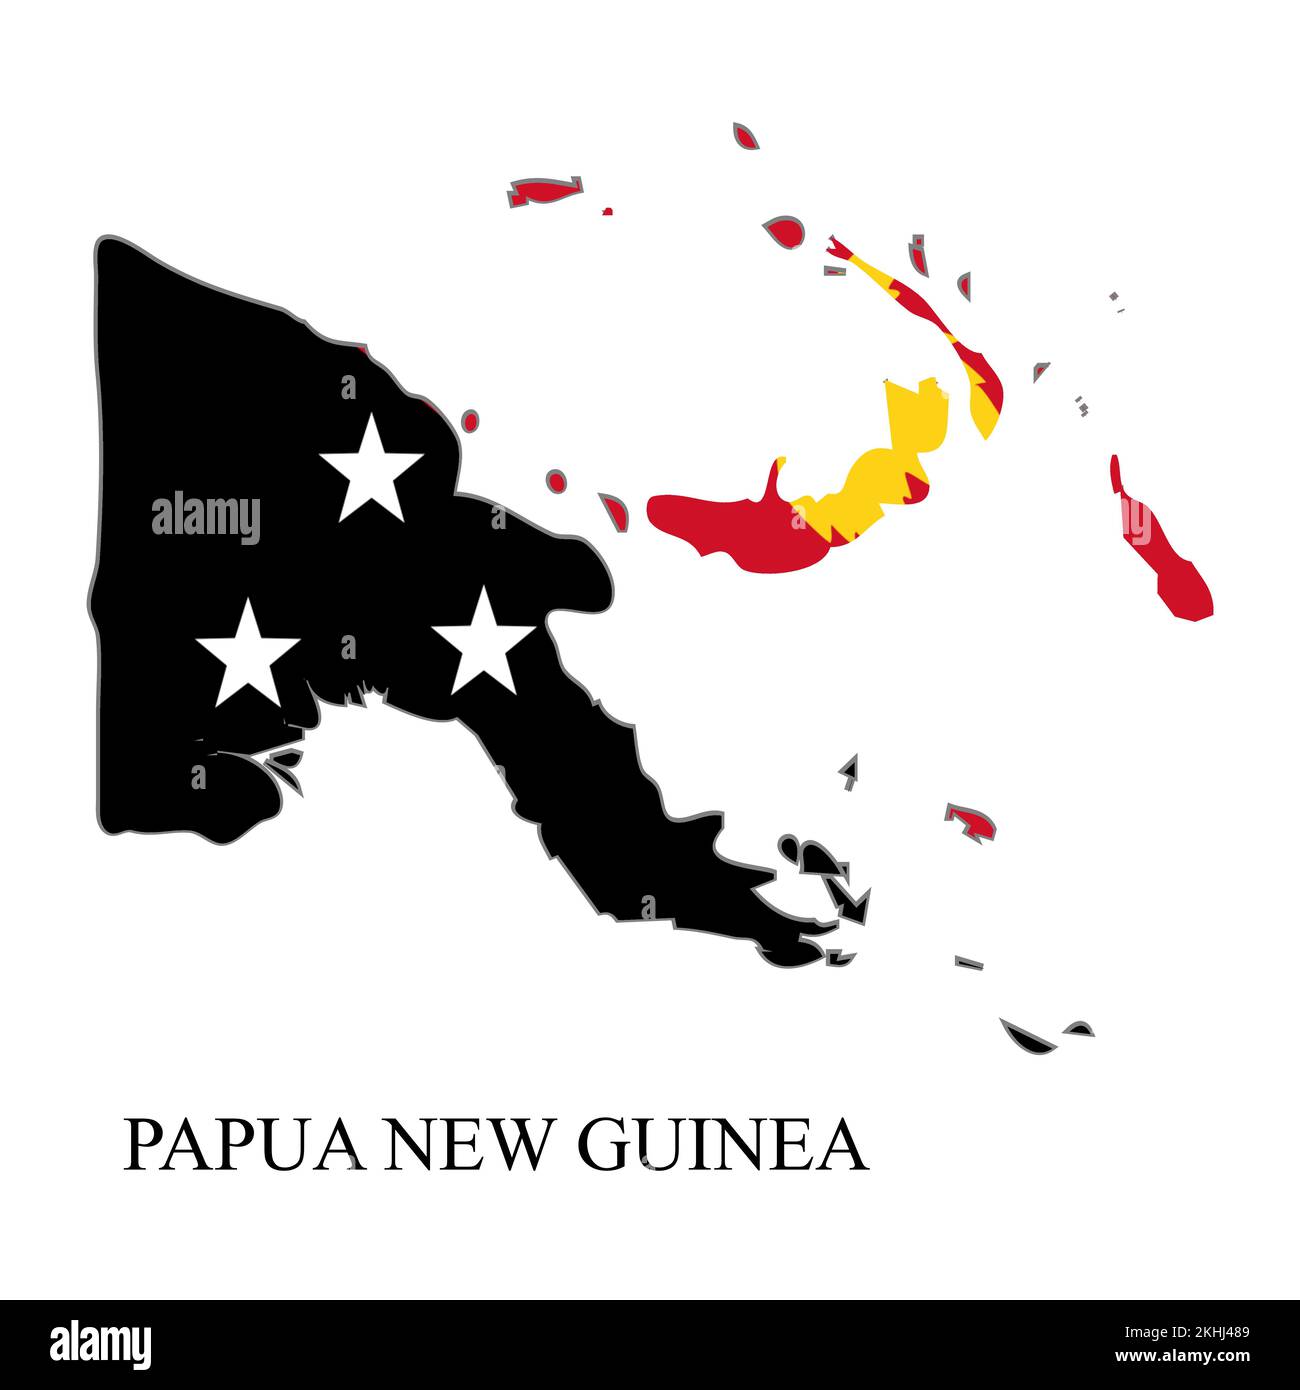 Illustration vectorielle de la carte de Papouasie-Nouvelle-Guinée. Économie mondiale. Pays célèbre. Océanie. Île polynésienne Illustration de Vecteur